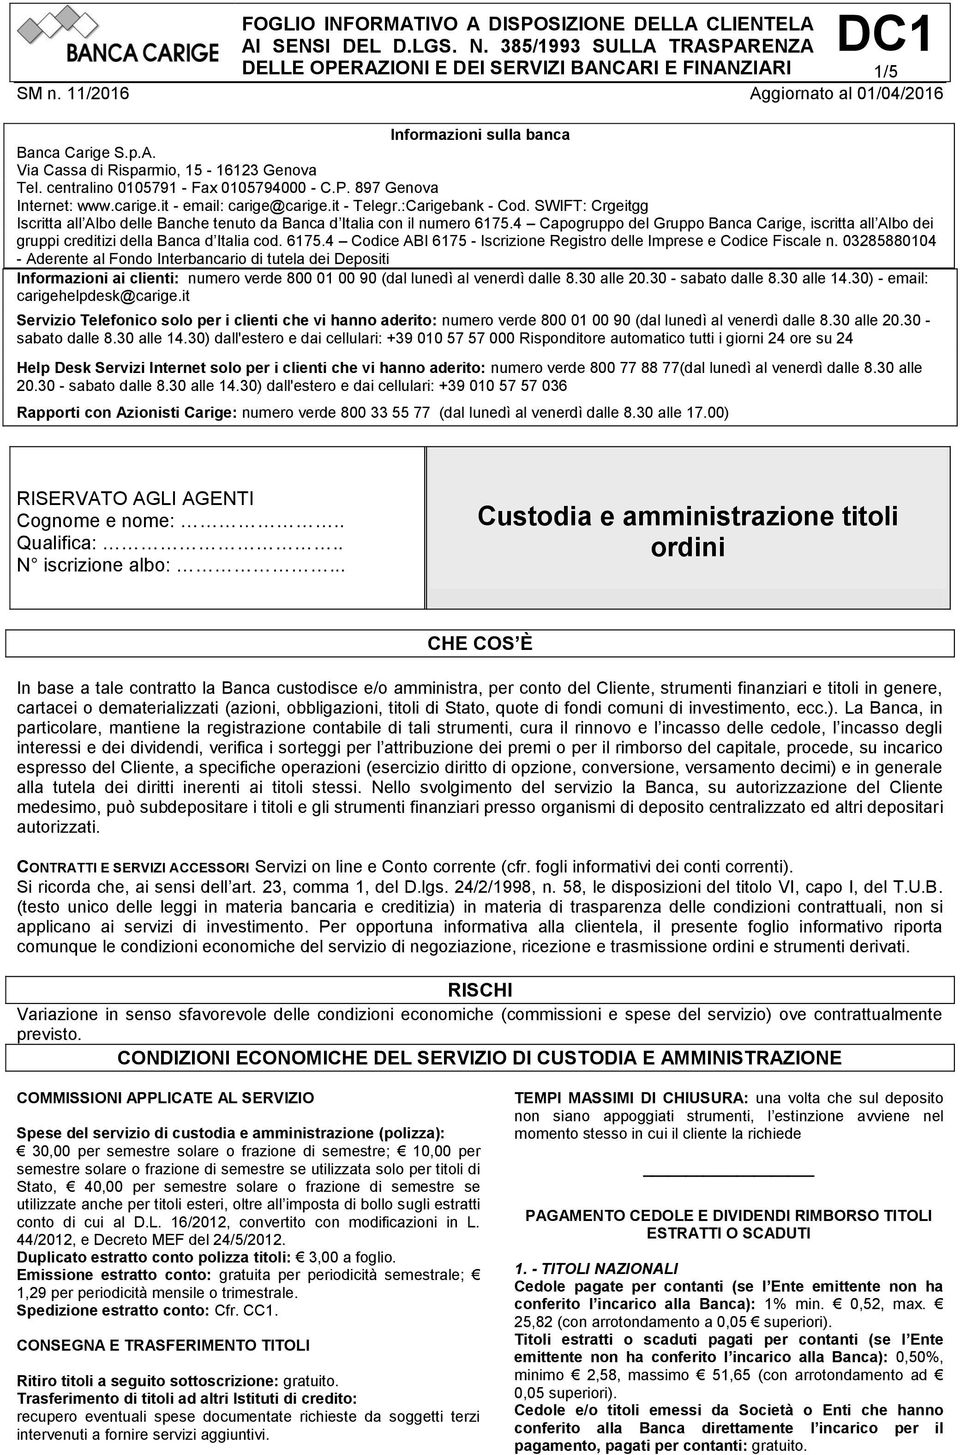 4 Capogruppo del Gruppo Banca Carige, iscritta all Albo dei gruppi creditizi della Banca d Italia cod. 6175.4 Codice ABI 6175 - Iscrizione Registro delle Imprese e Codice Fiscale n.